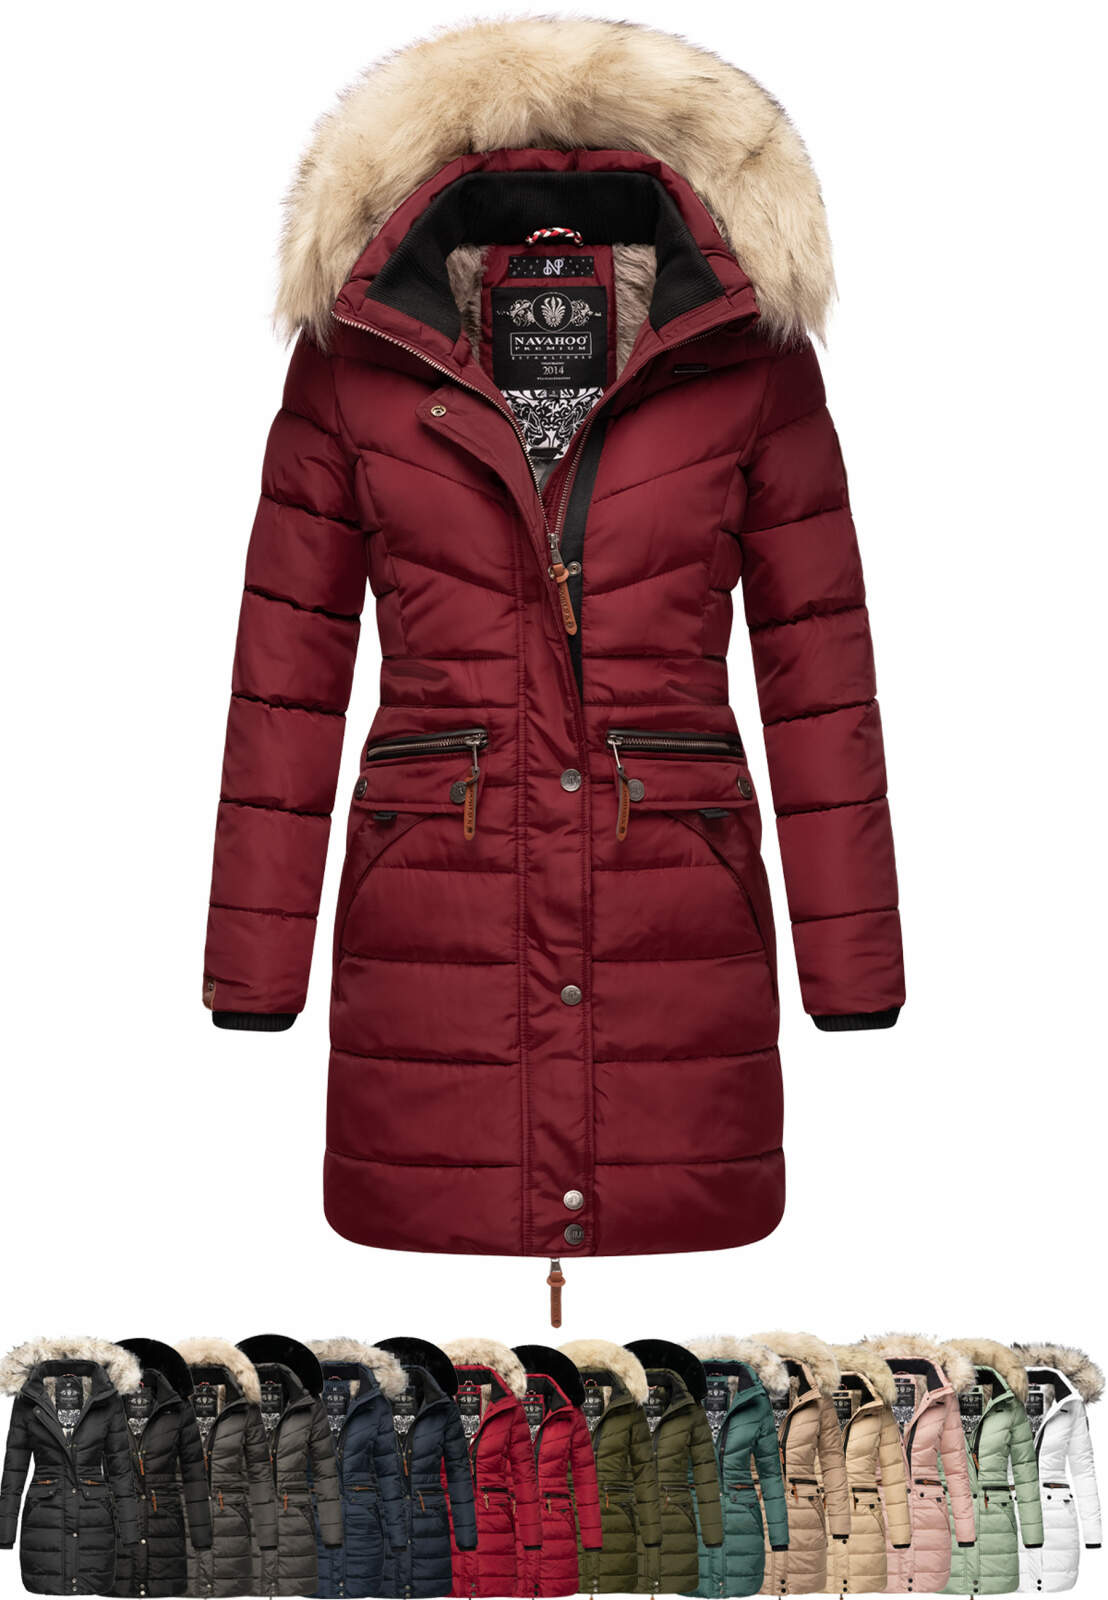 Damen Kunstfell Winterjacke Warm Mantel Pelz Fleecejacke Outwear Tops Winter 44